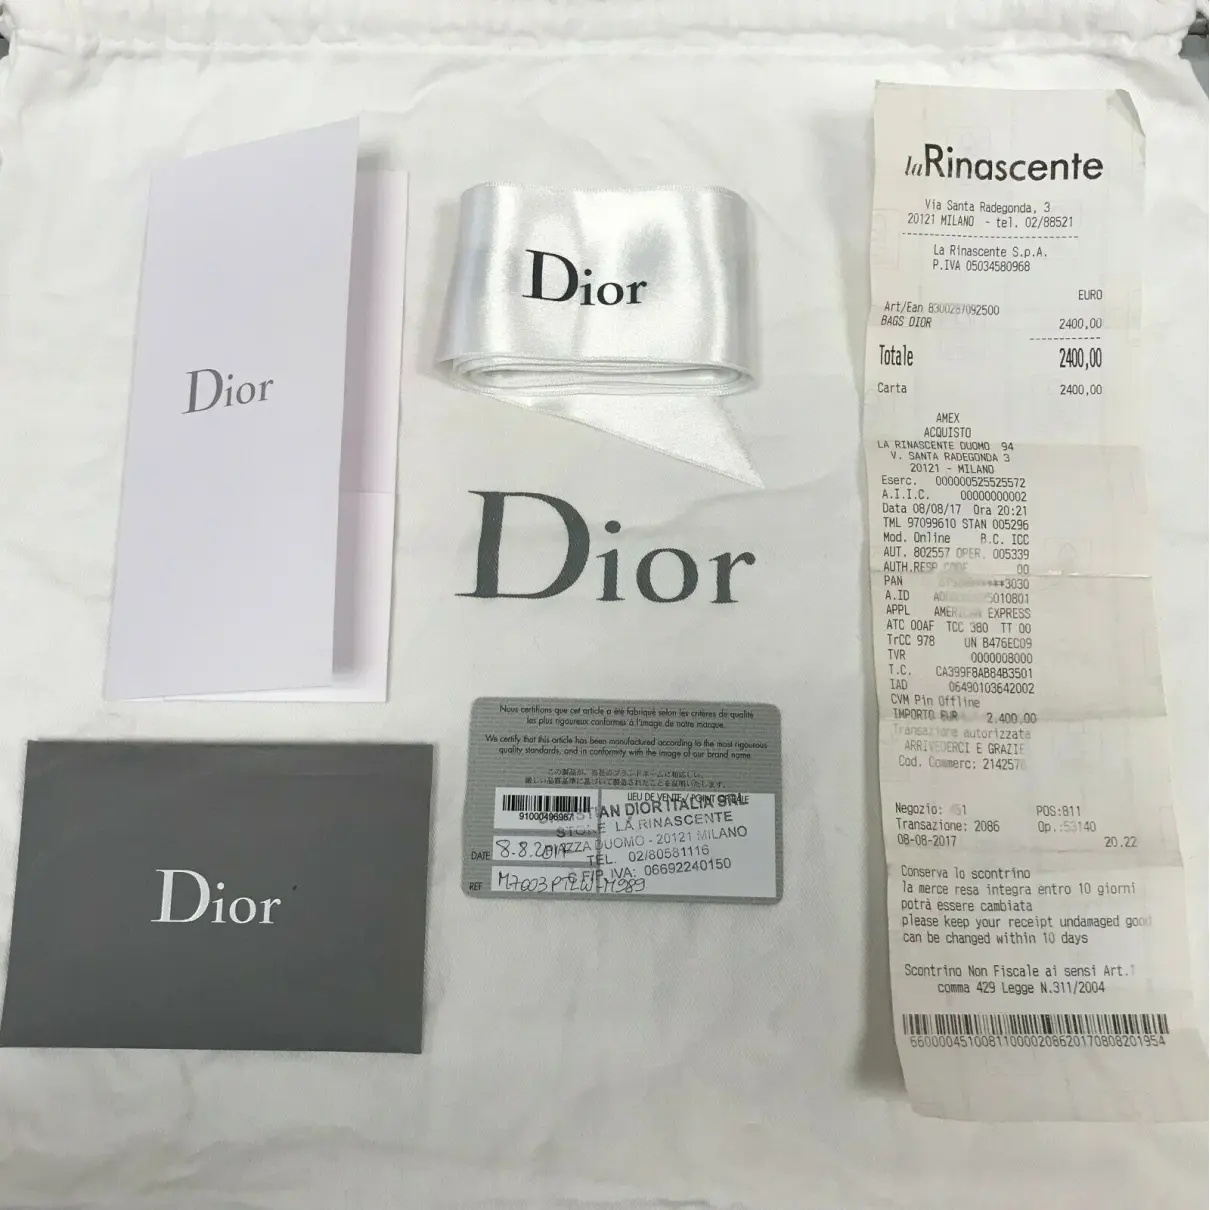 Diorever leather crossbody bag Dior